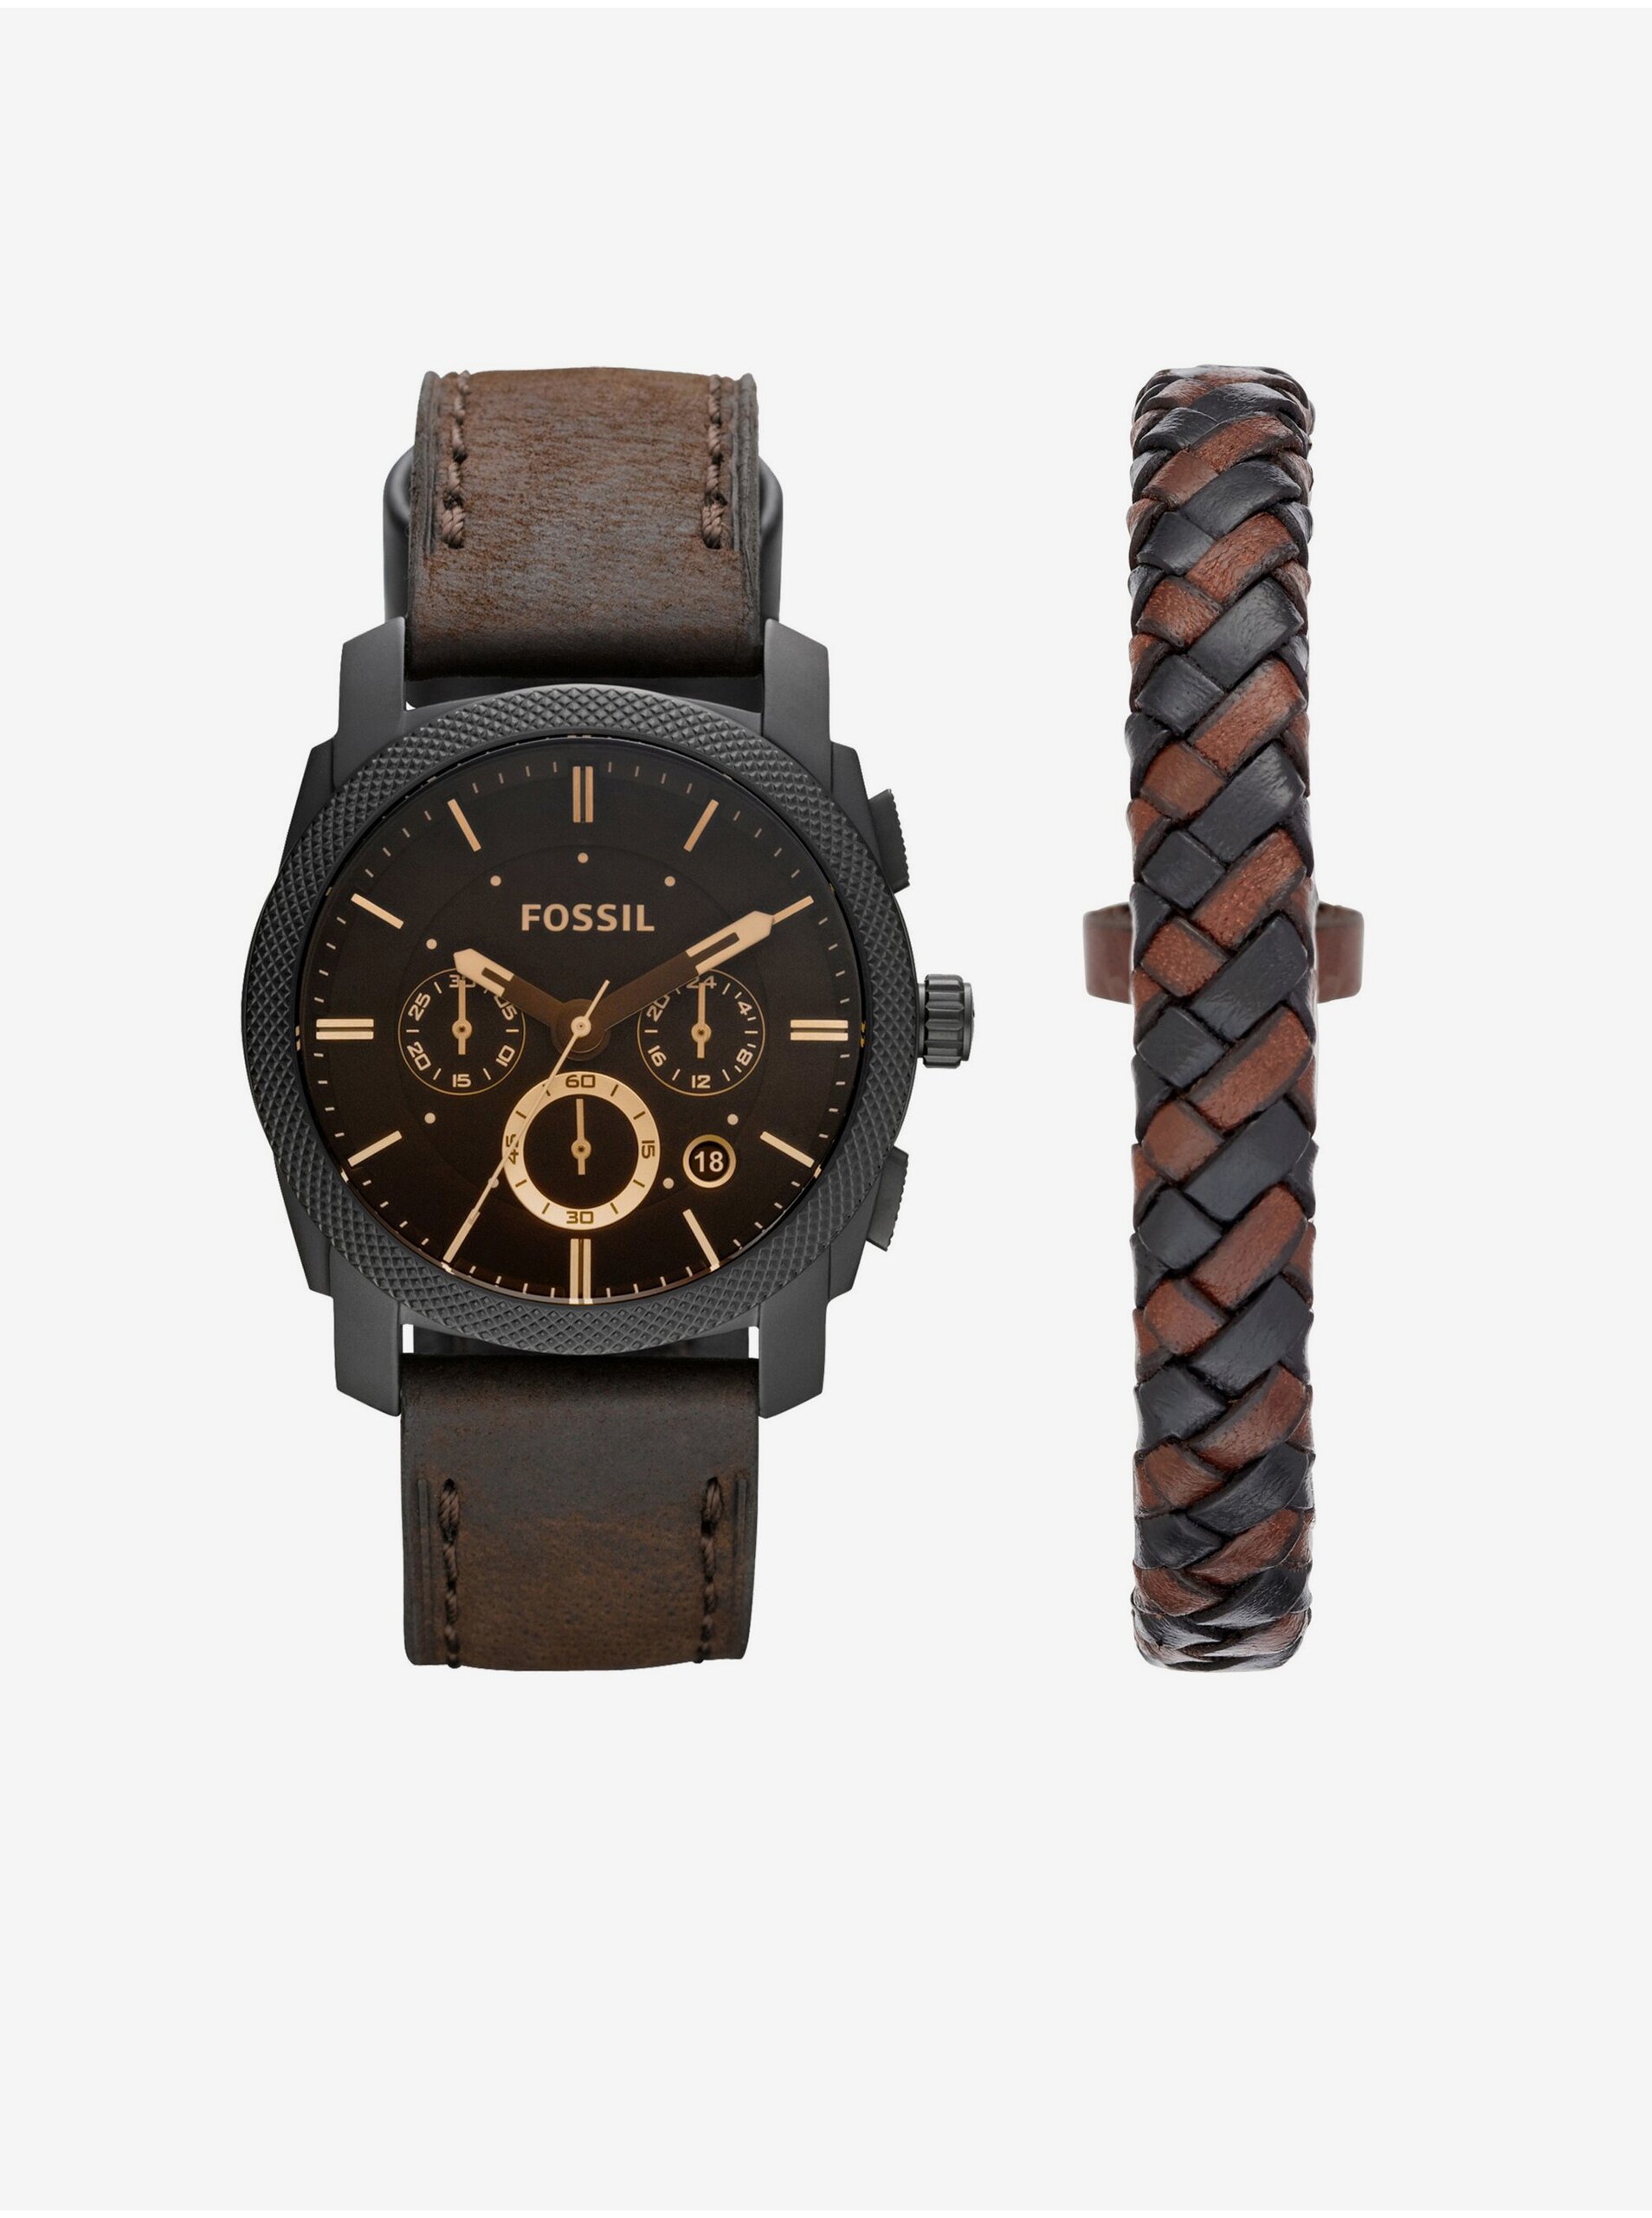 E-shop Fossil pánská sada hodinek Machine a koženého náramku Fossil